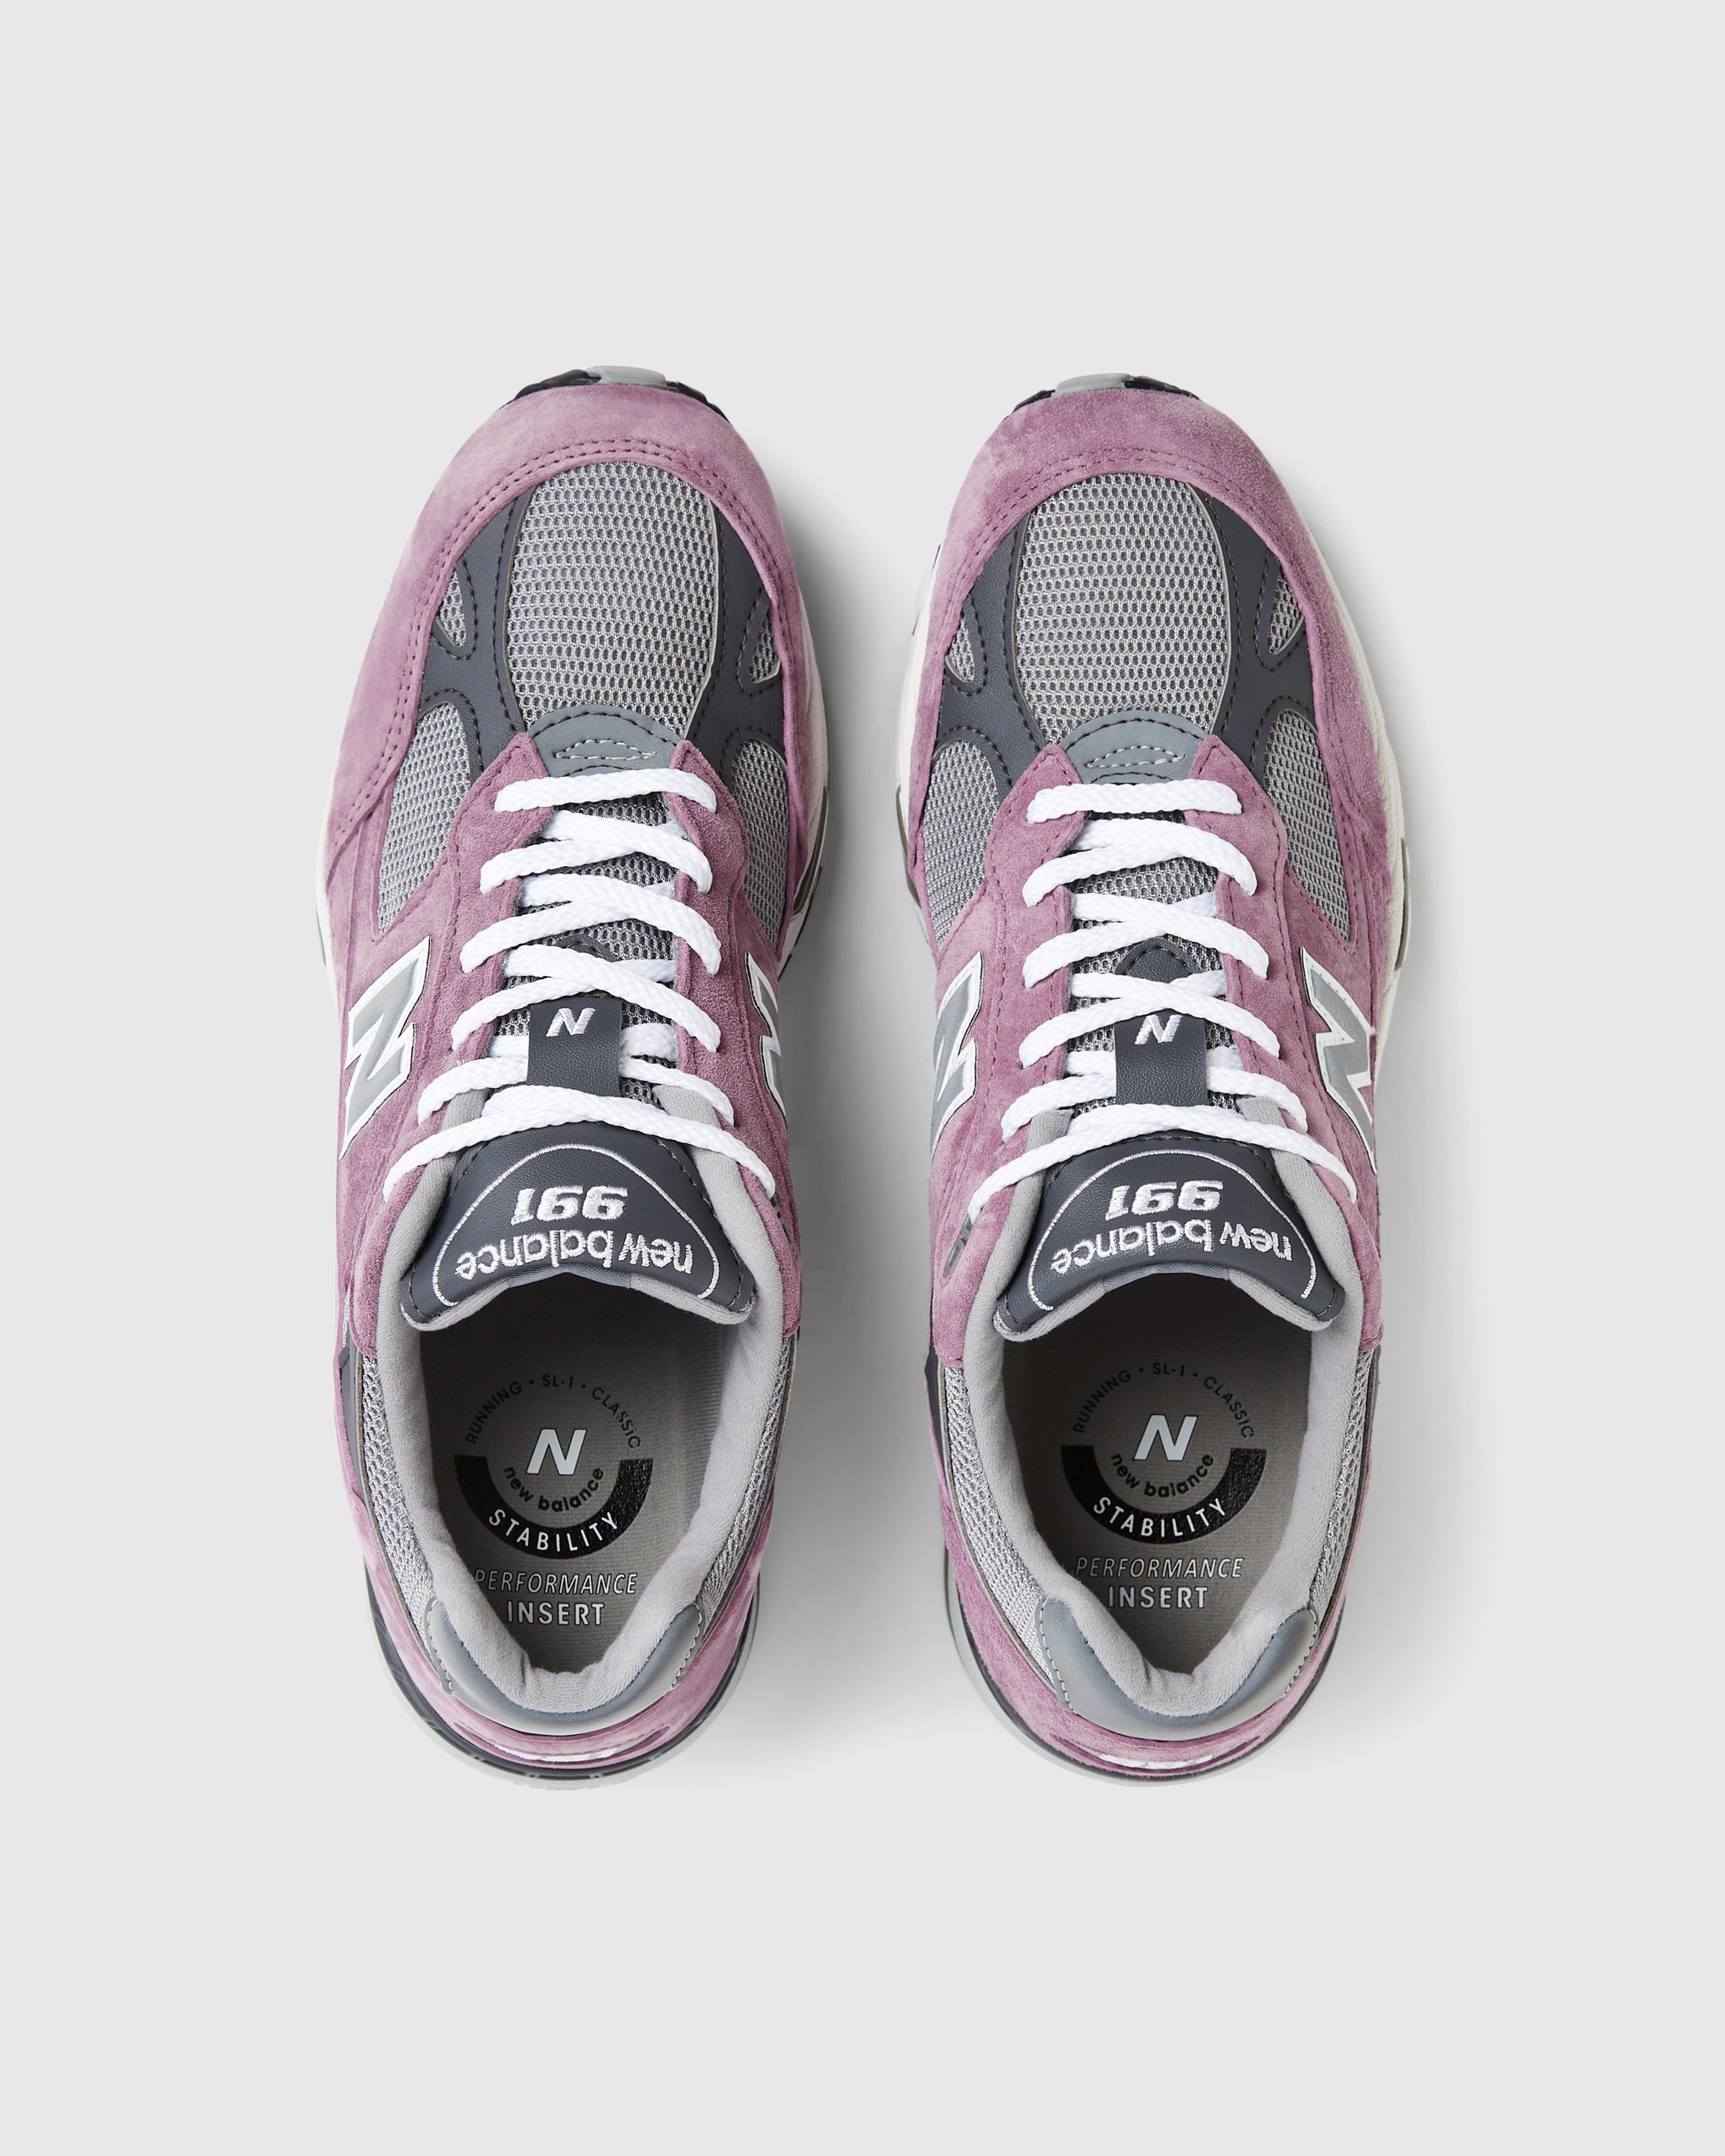 New Balance - M 991 PGG Pink/Grey - Footwear - Pink - Image 5